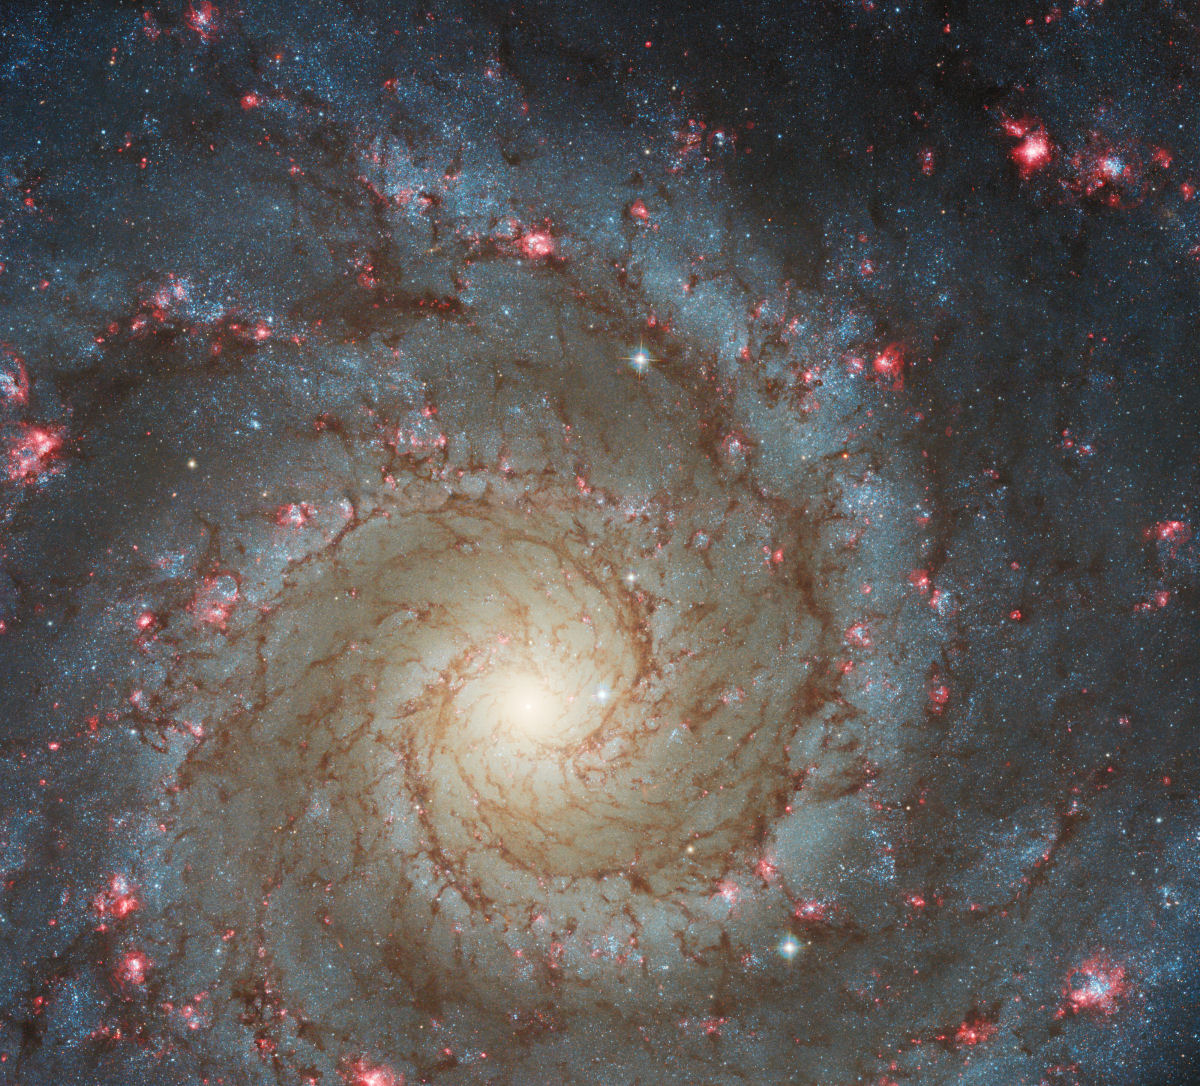 Telescópio Webb captura a incrível beleza da galáxia fantasma